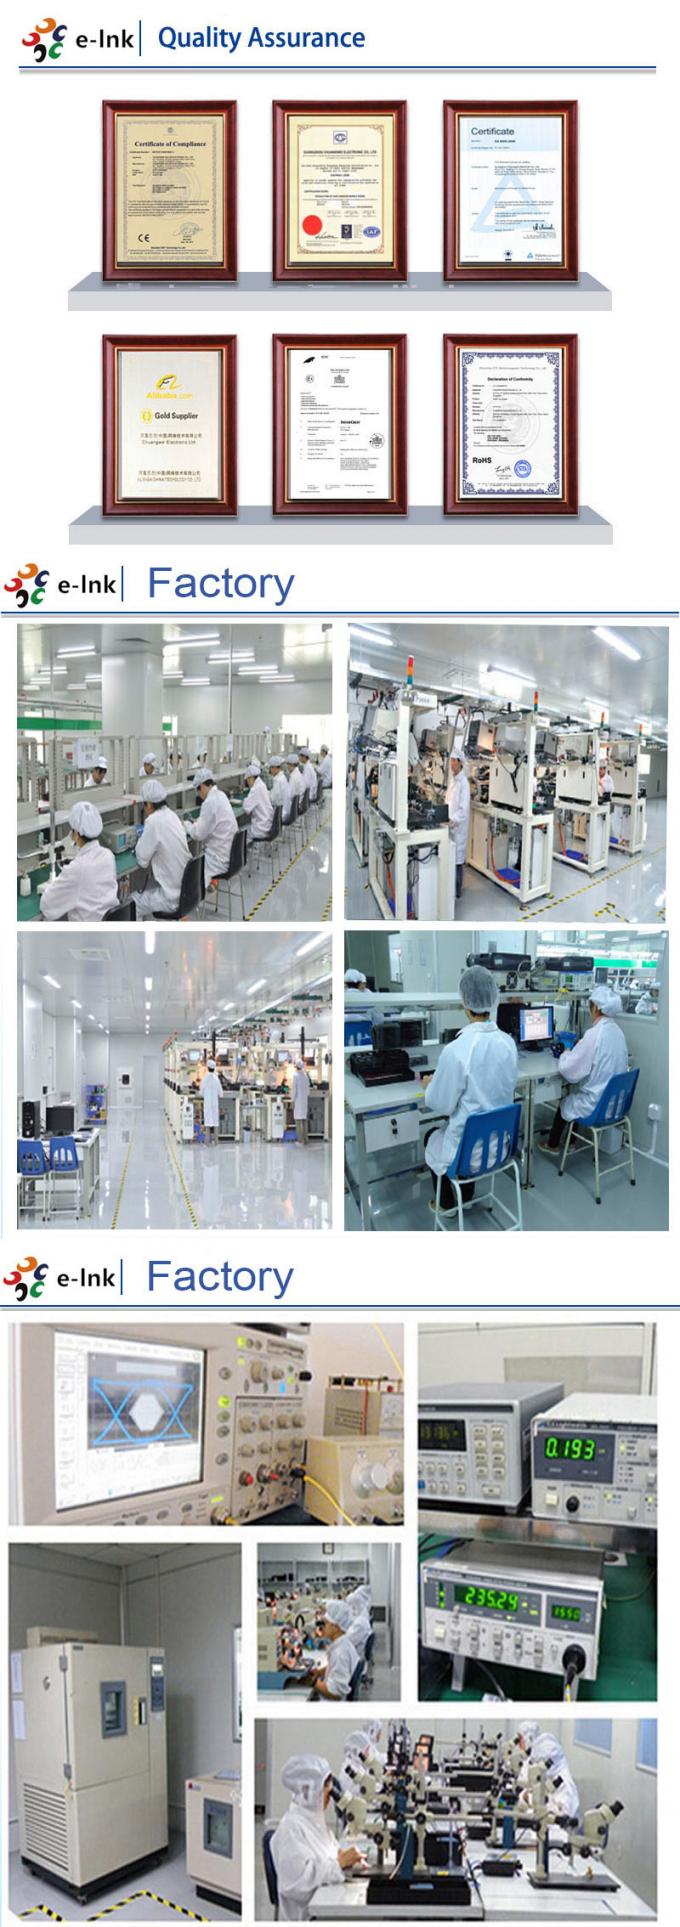 E-link Factory i certyfikaty